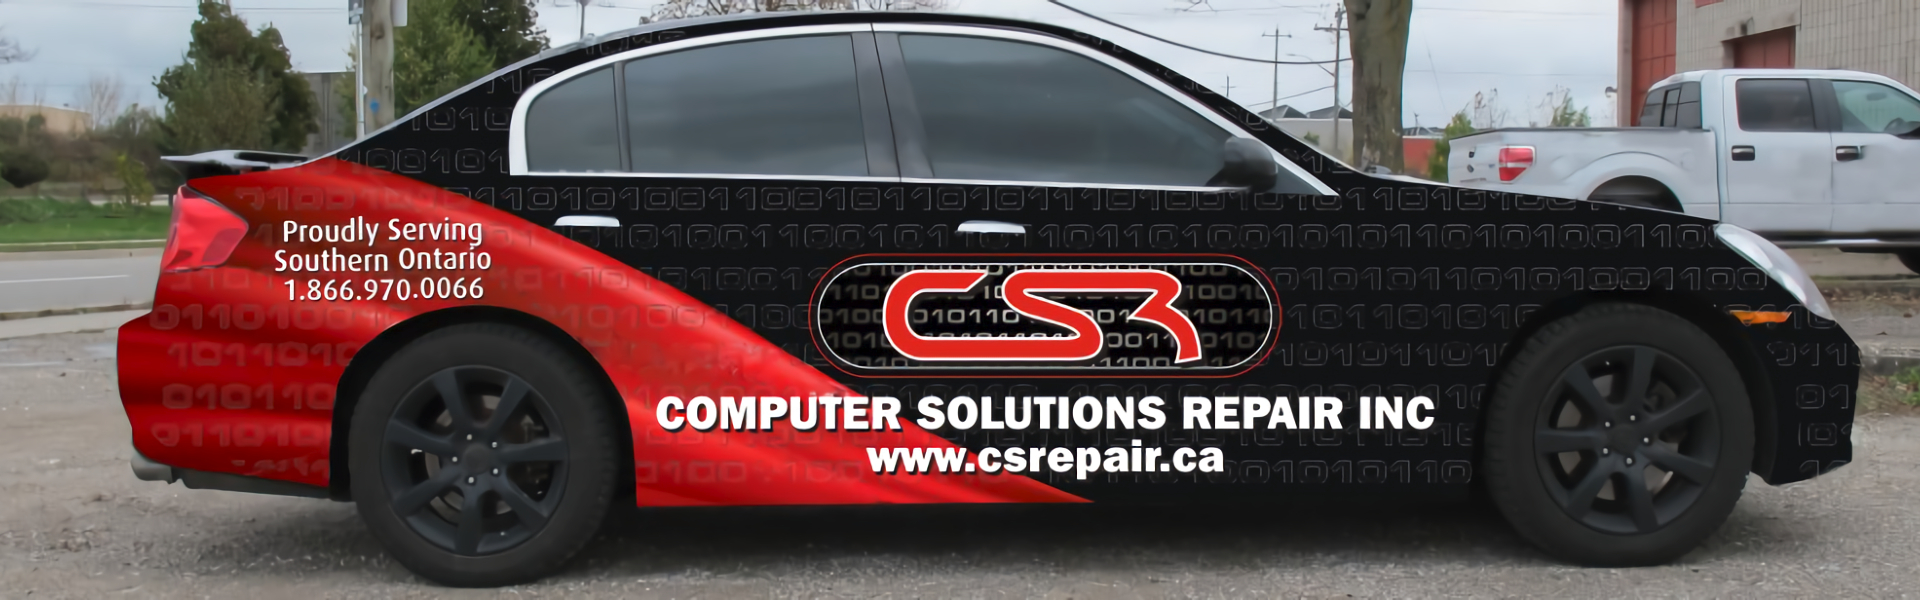 Computer Solutions Repair Inc.